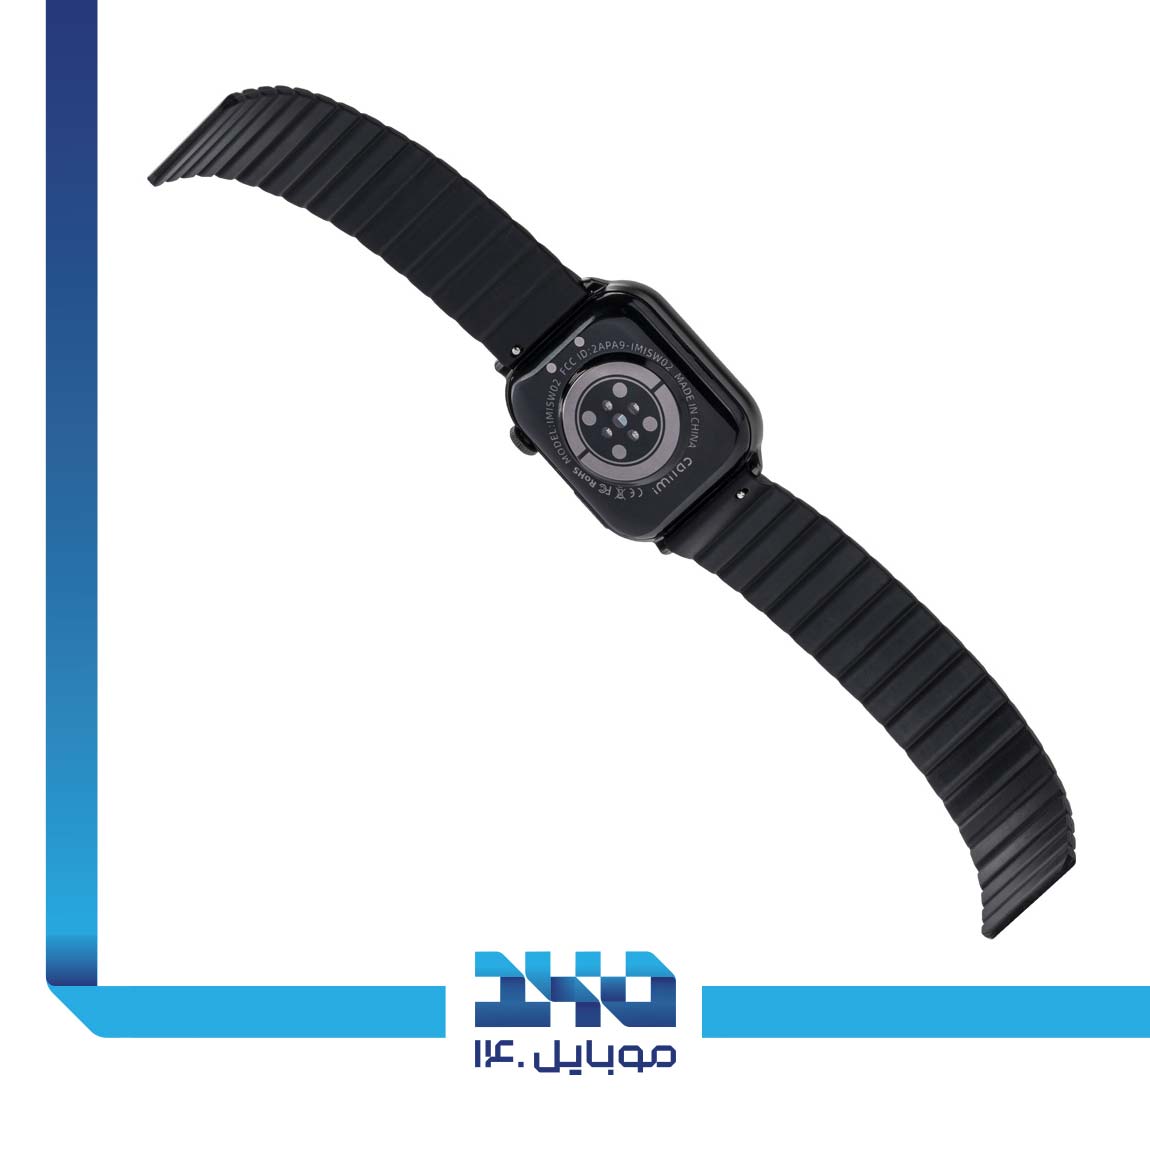 Imilab W02 smart watch 3